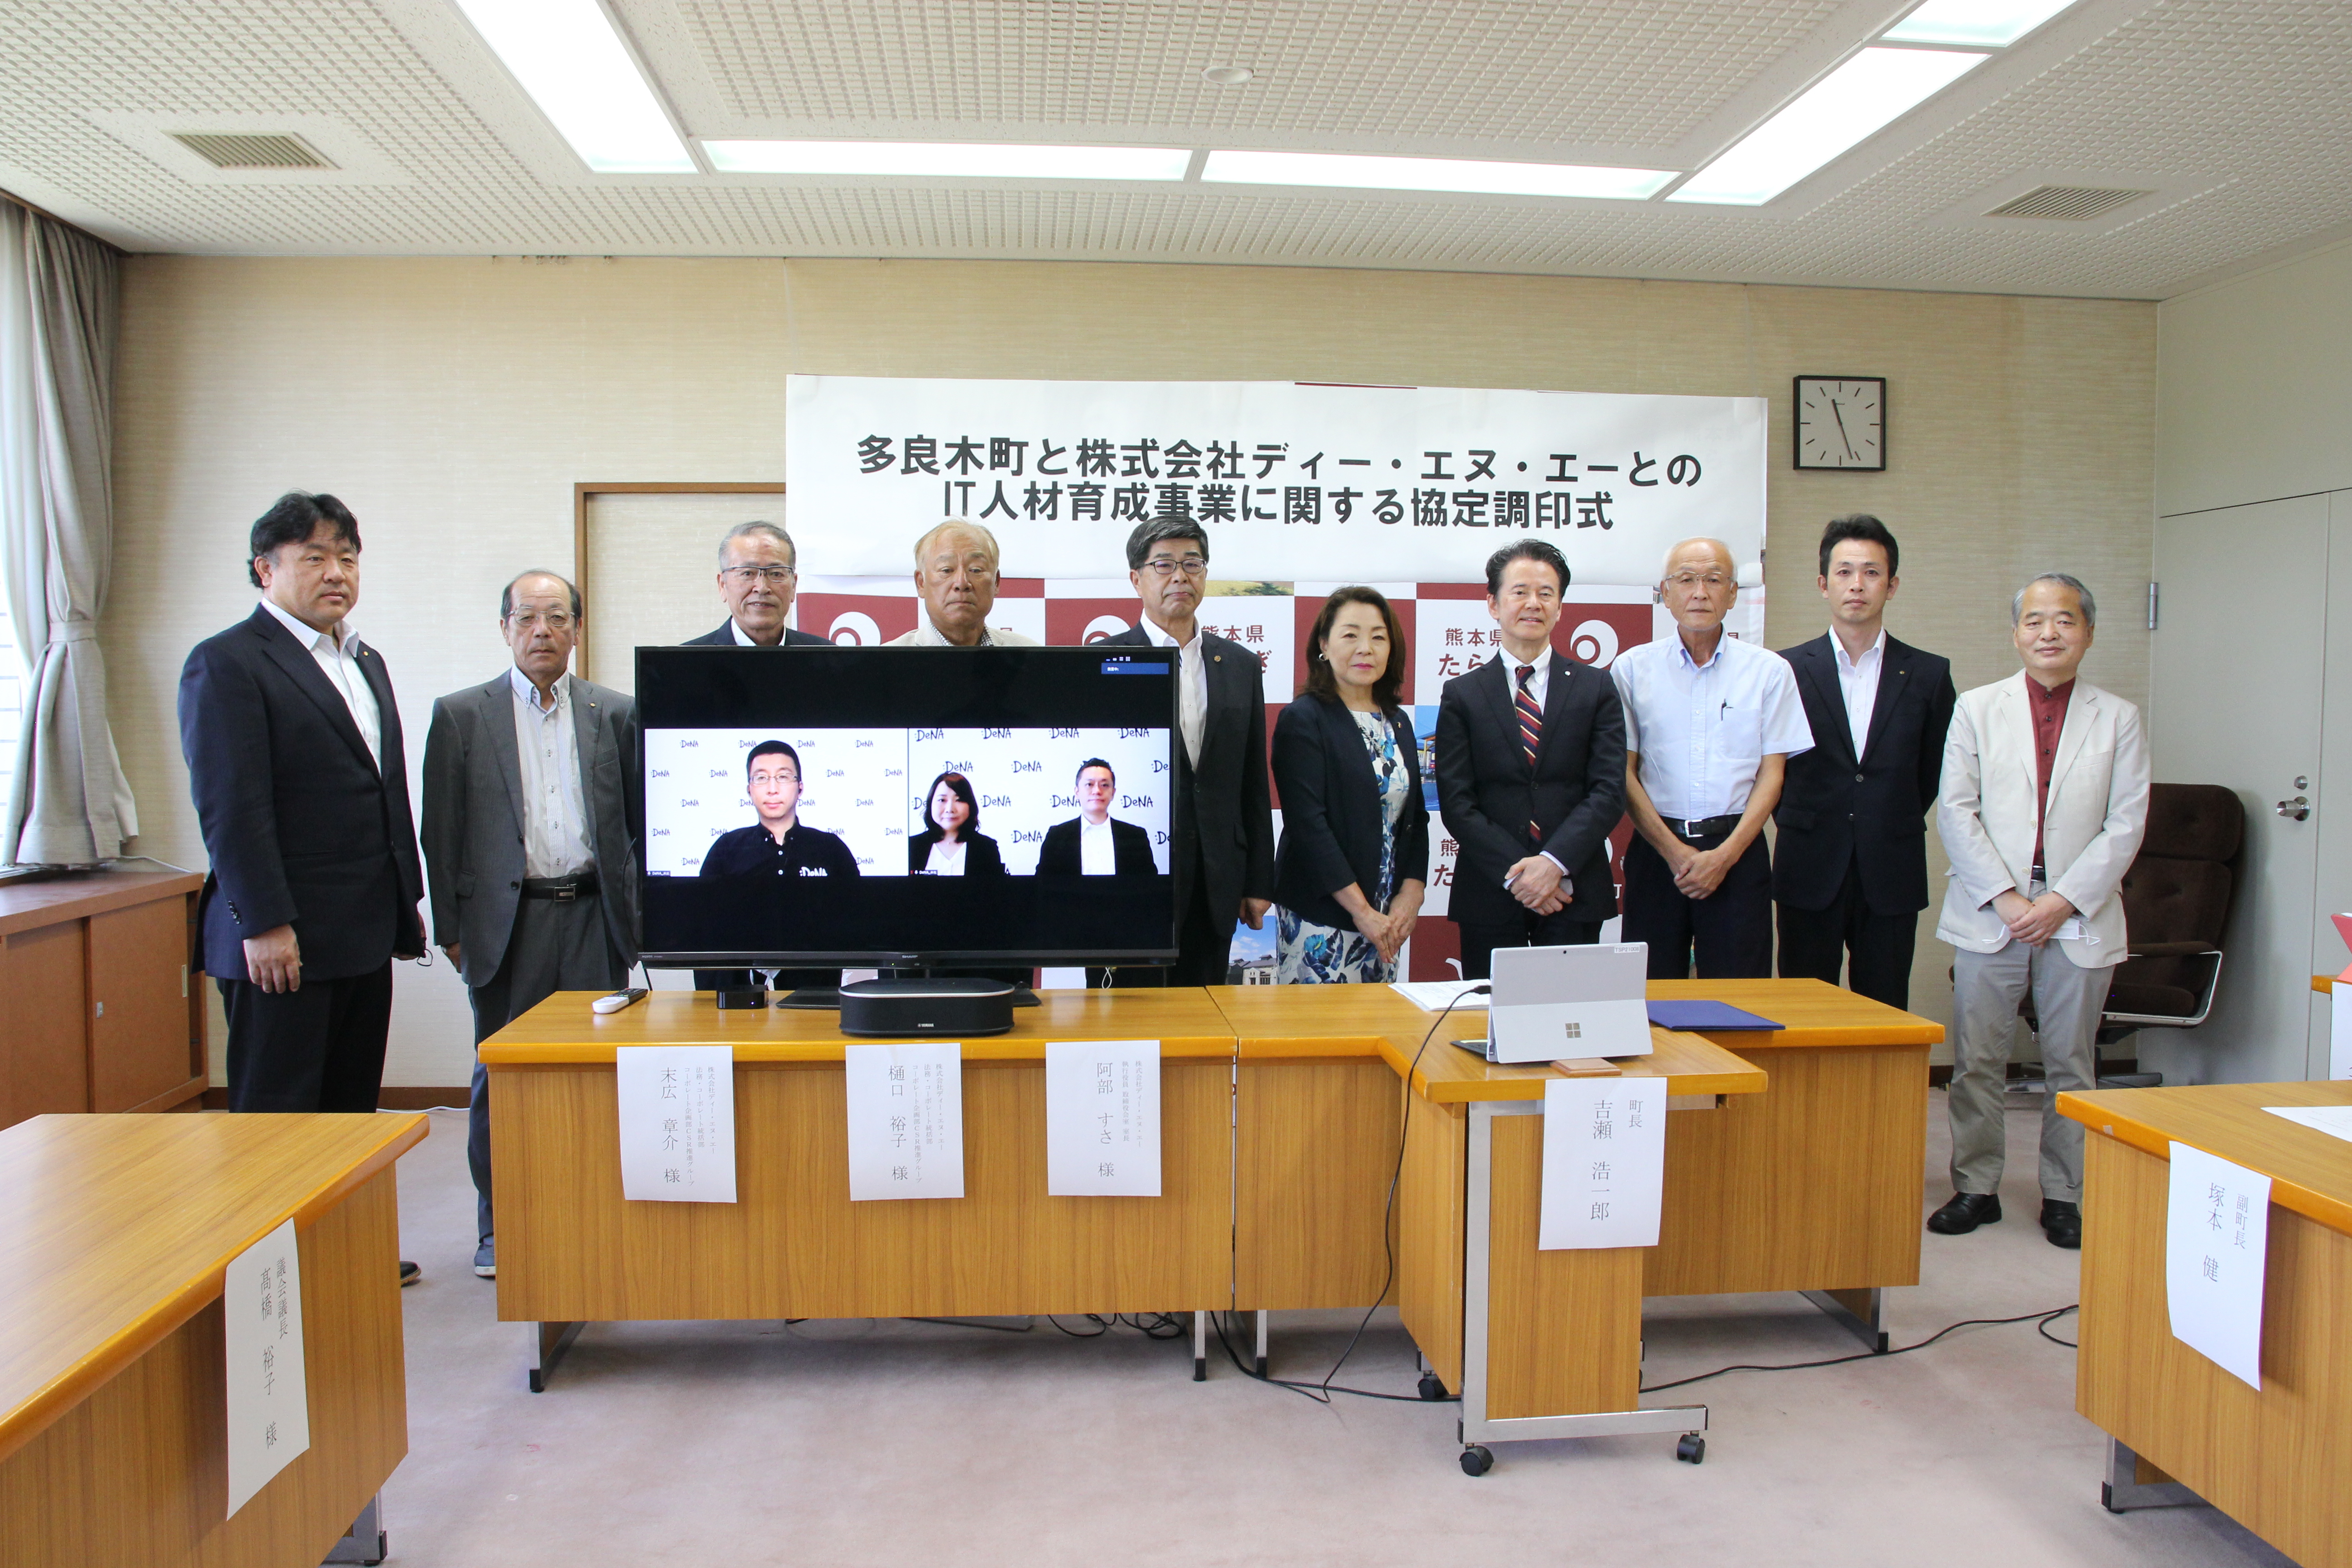 熊本県多良木町とのIT人事育成事業に関する協定の締結